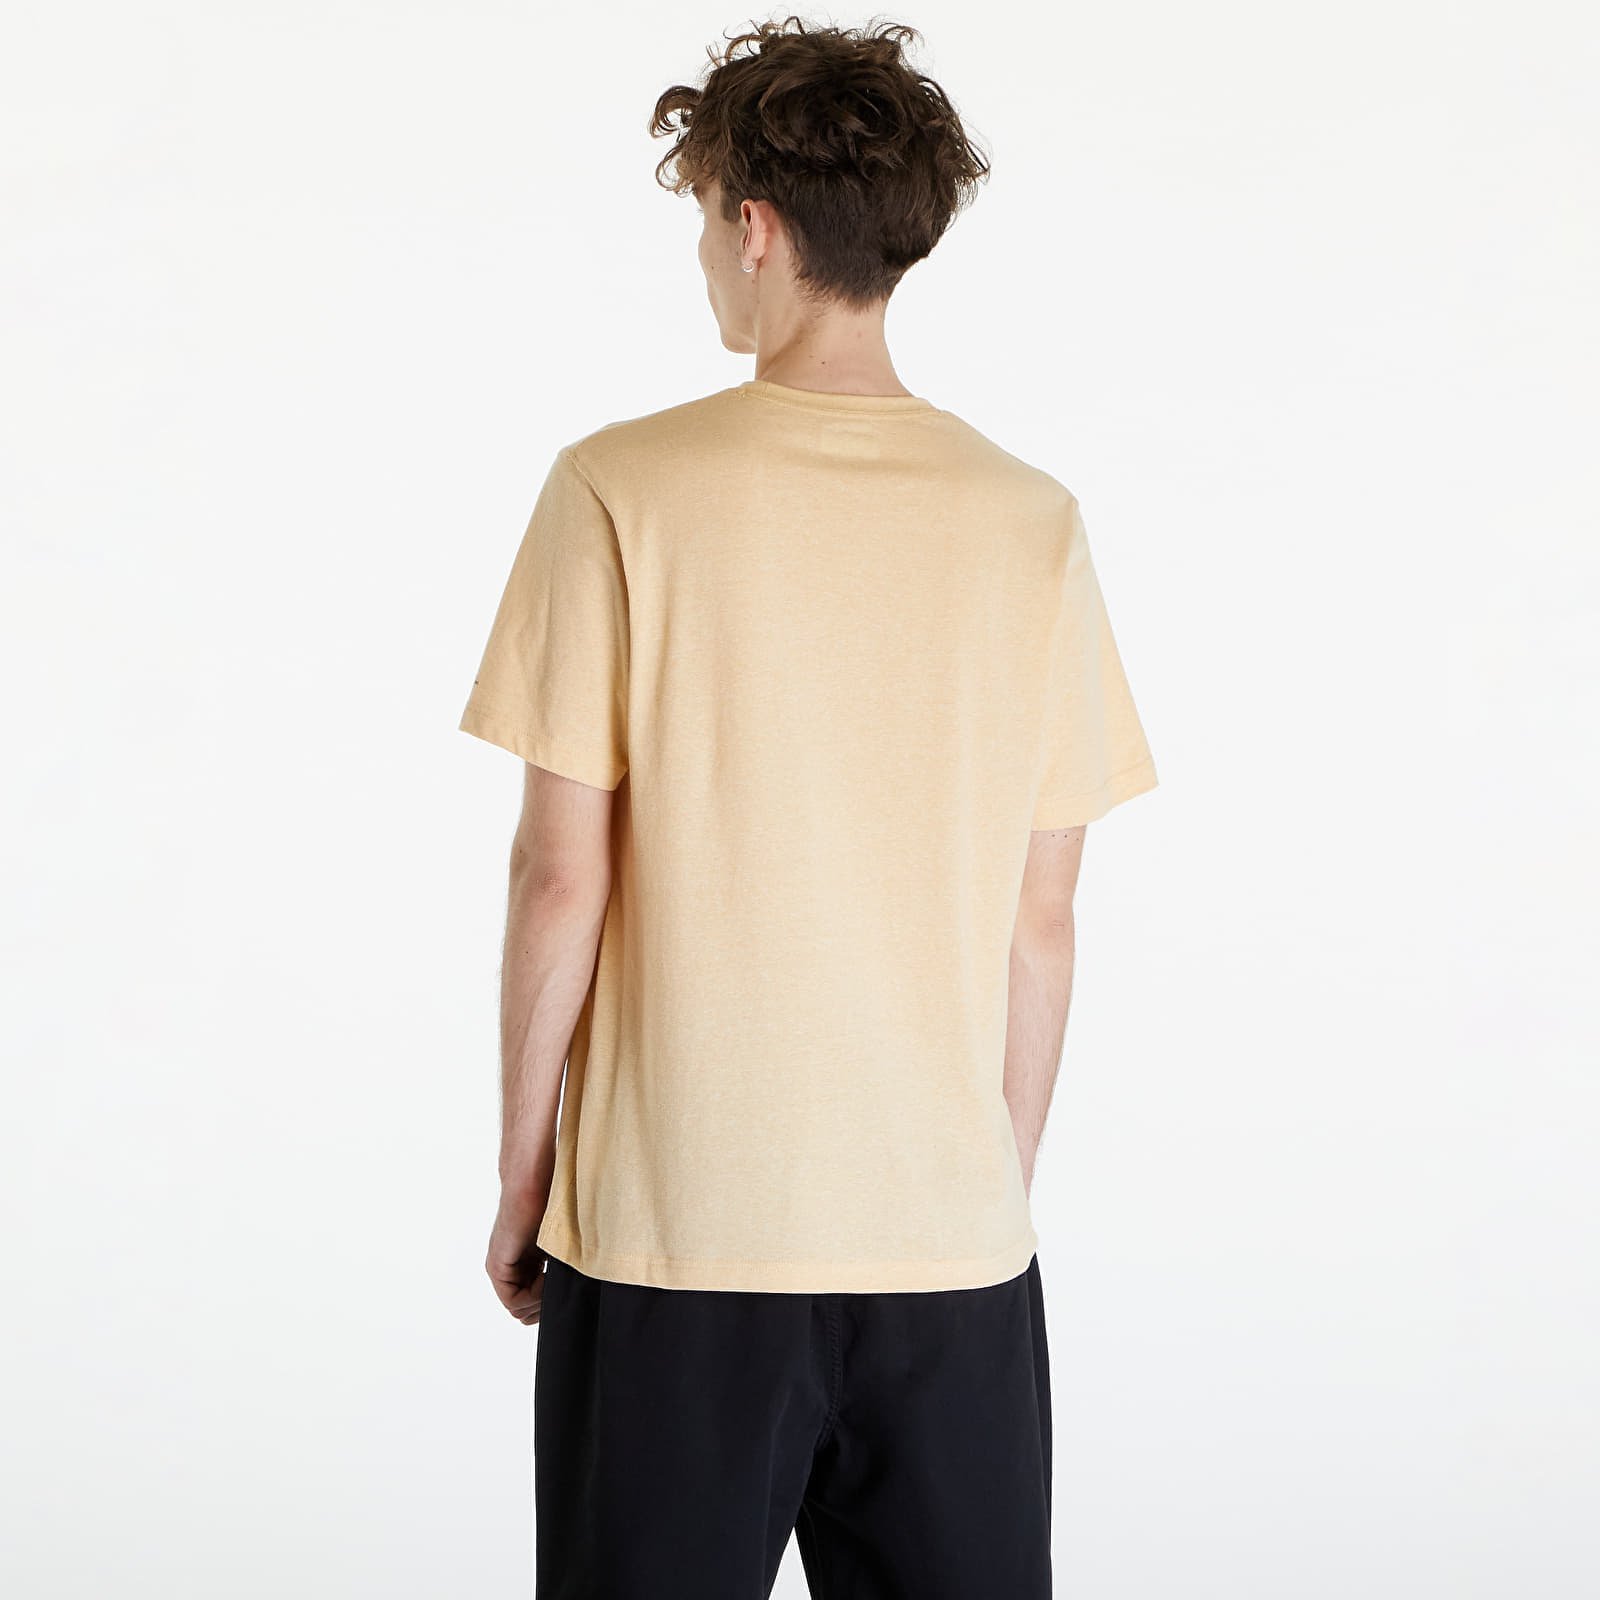 Thistletown Hills™ Short Sleeve T-Shirt Light Camel Heather